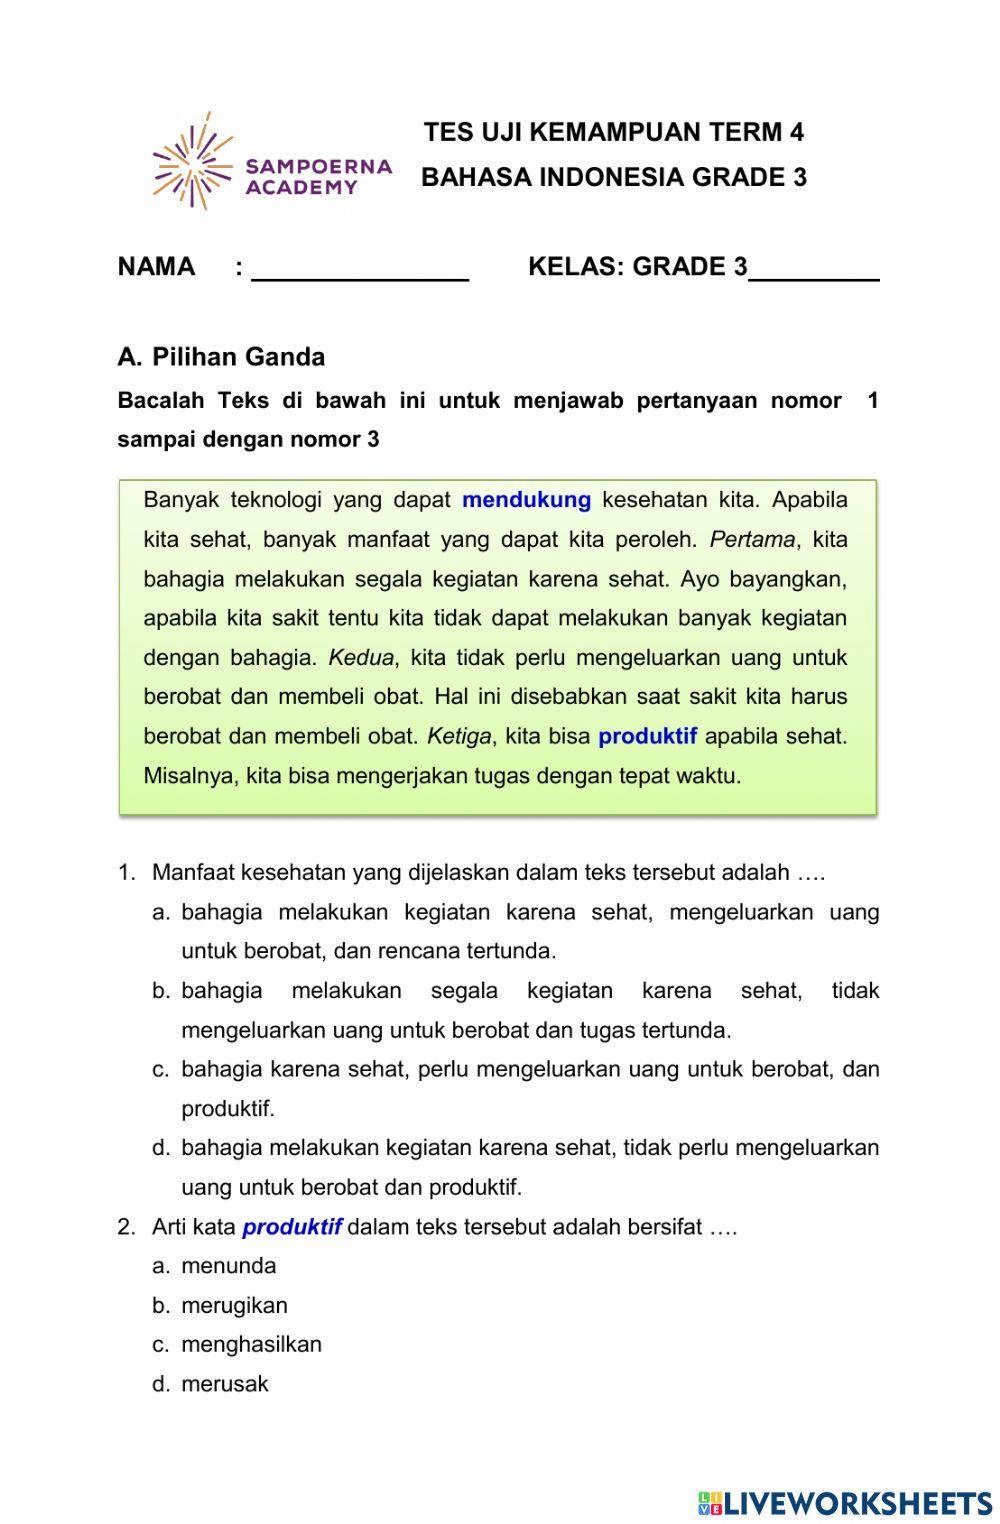 Tes Uji Kemampuan Bahasa Indonesia